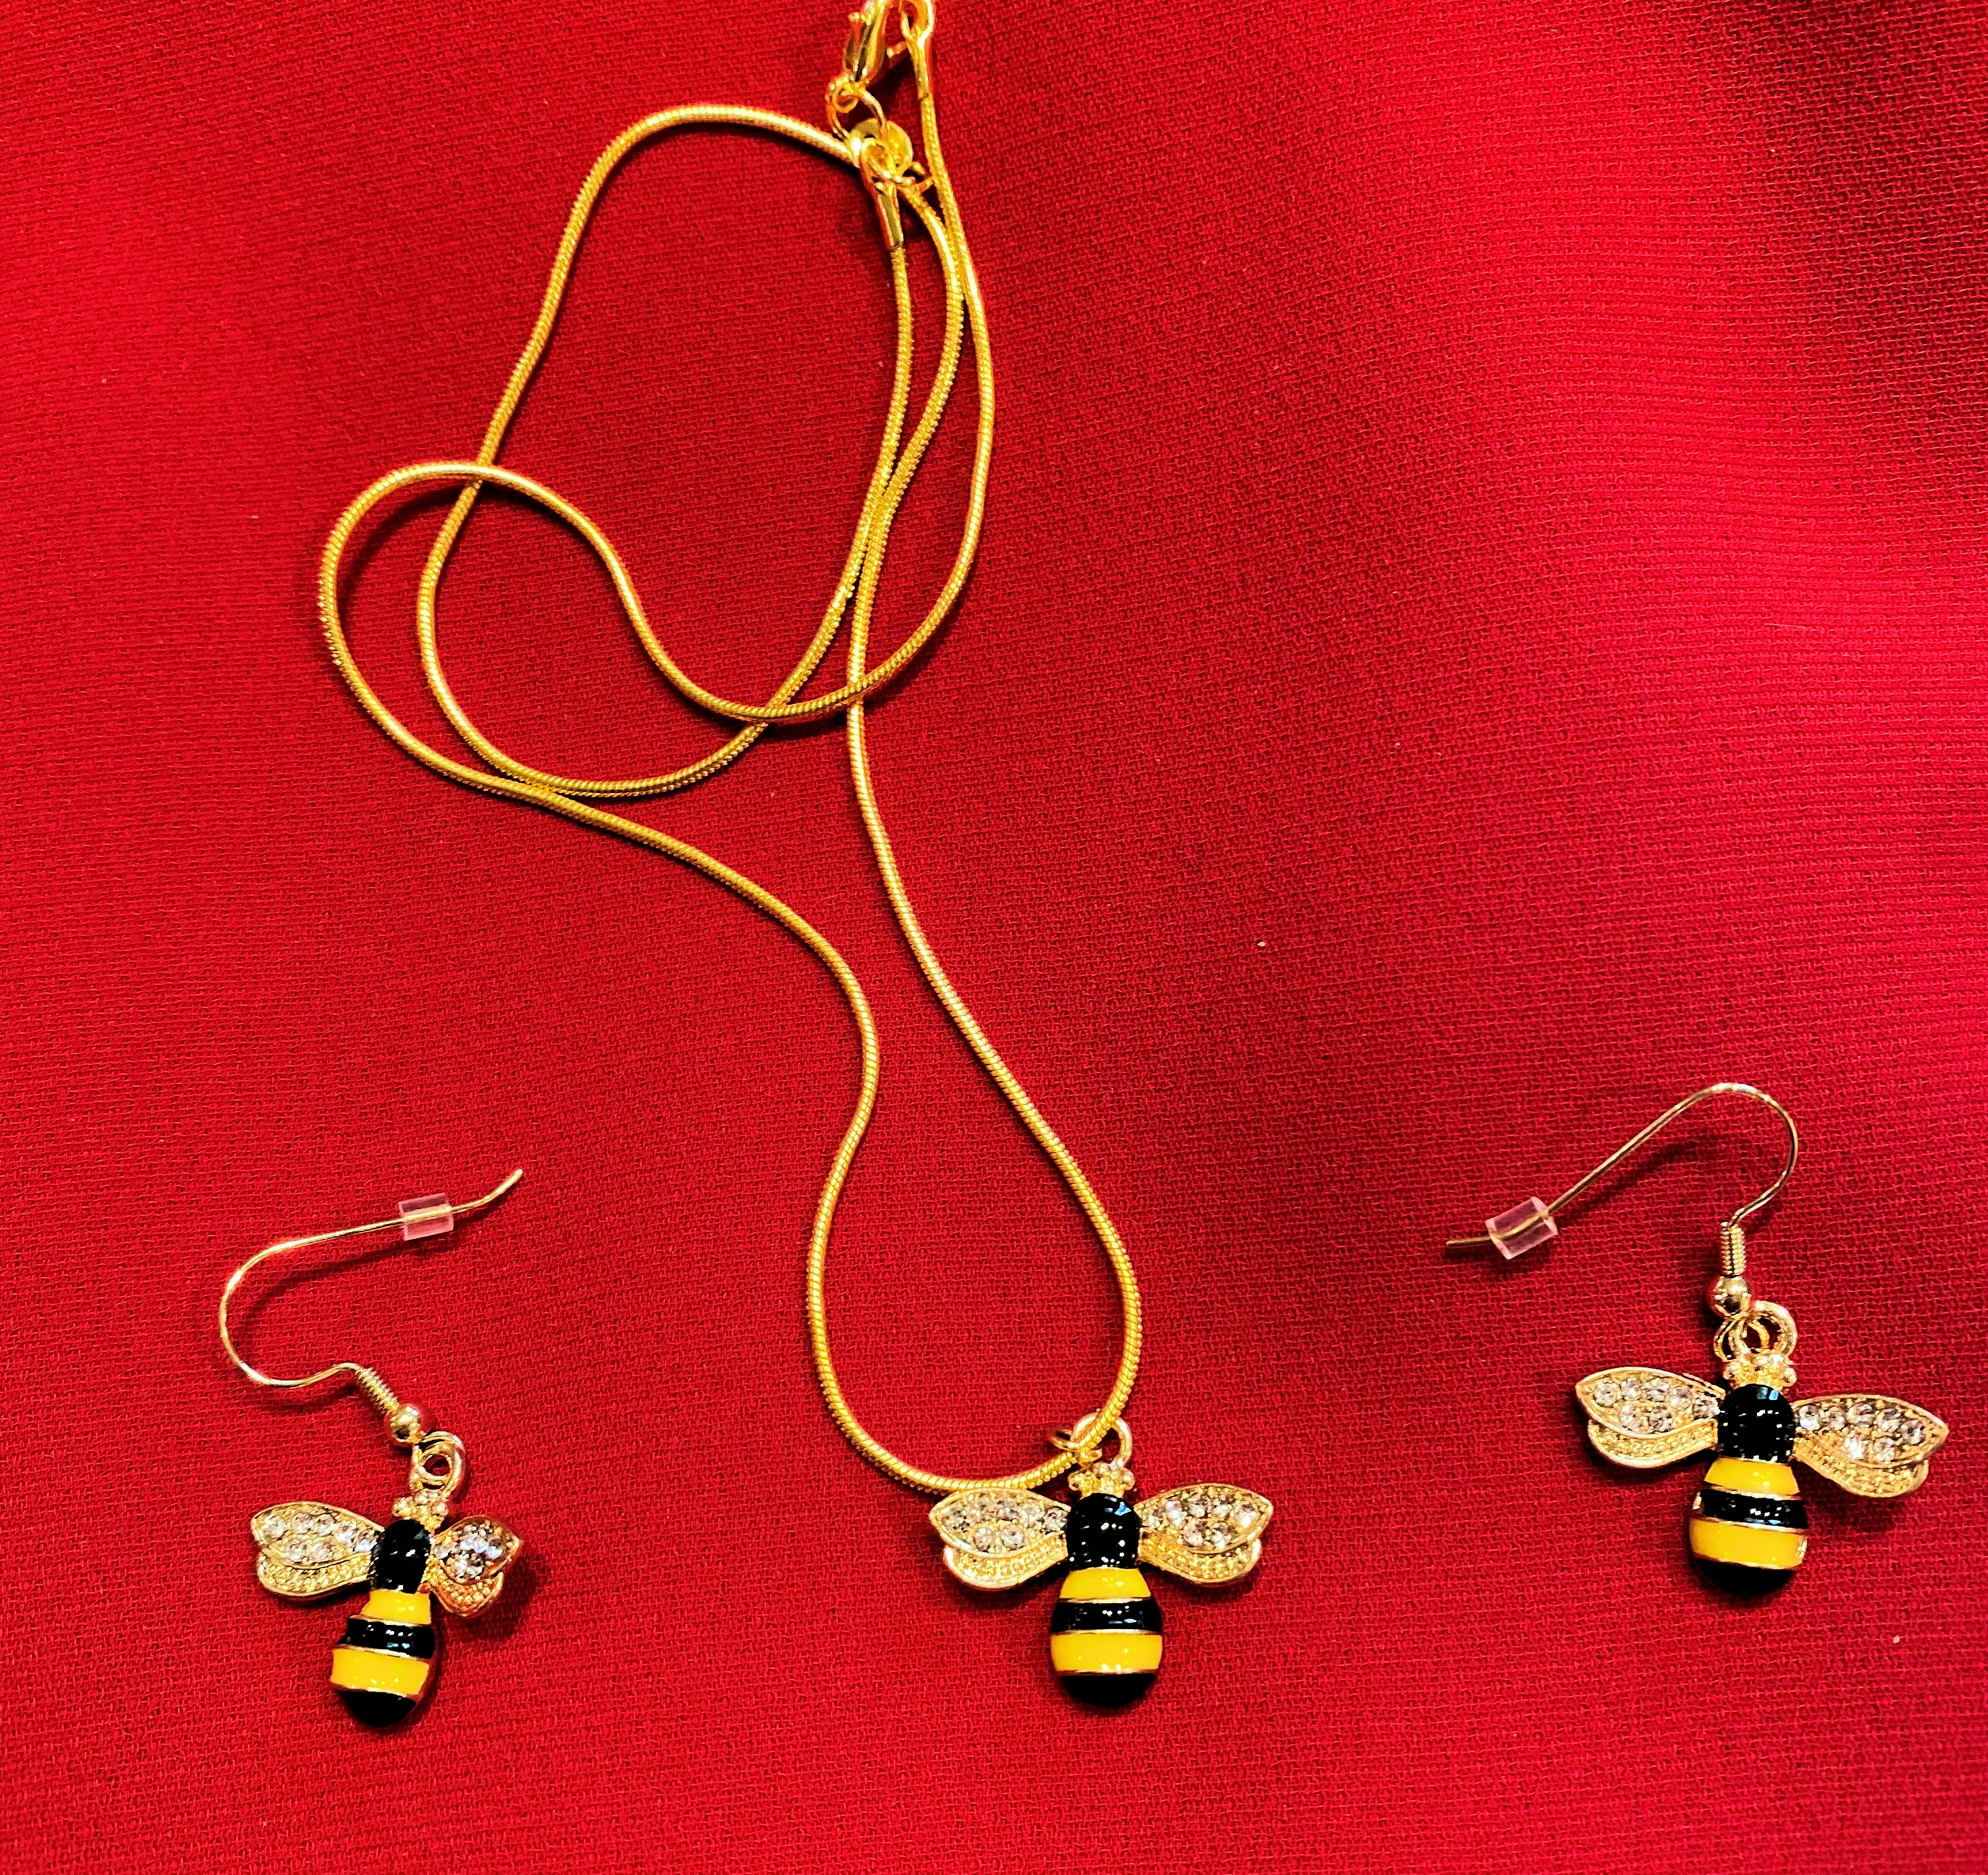 honeybee jewelry